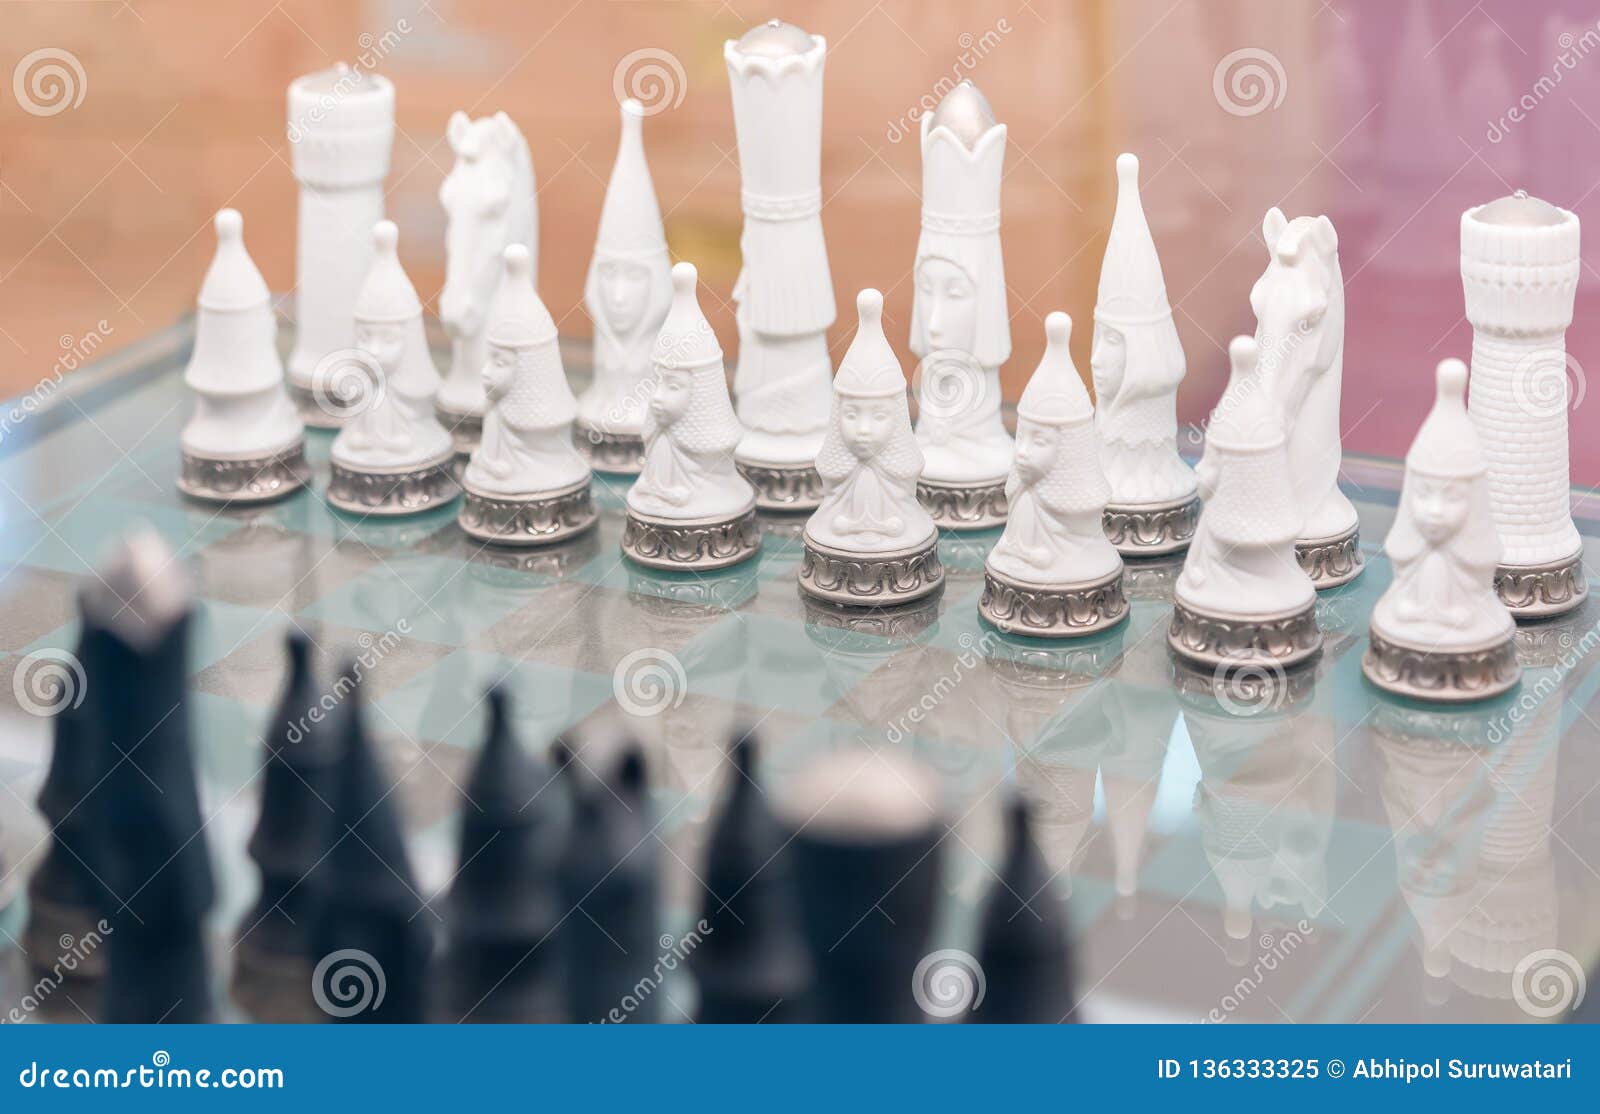 Conceito de estratégia e xadrez com figuras de xadrez na vista superior do  tabuleiro de damas.